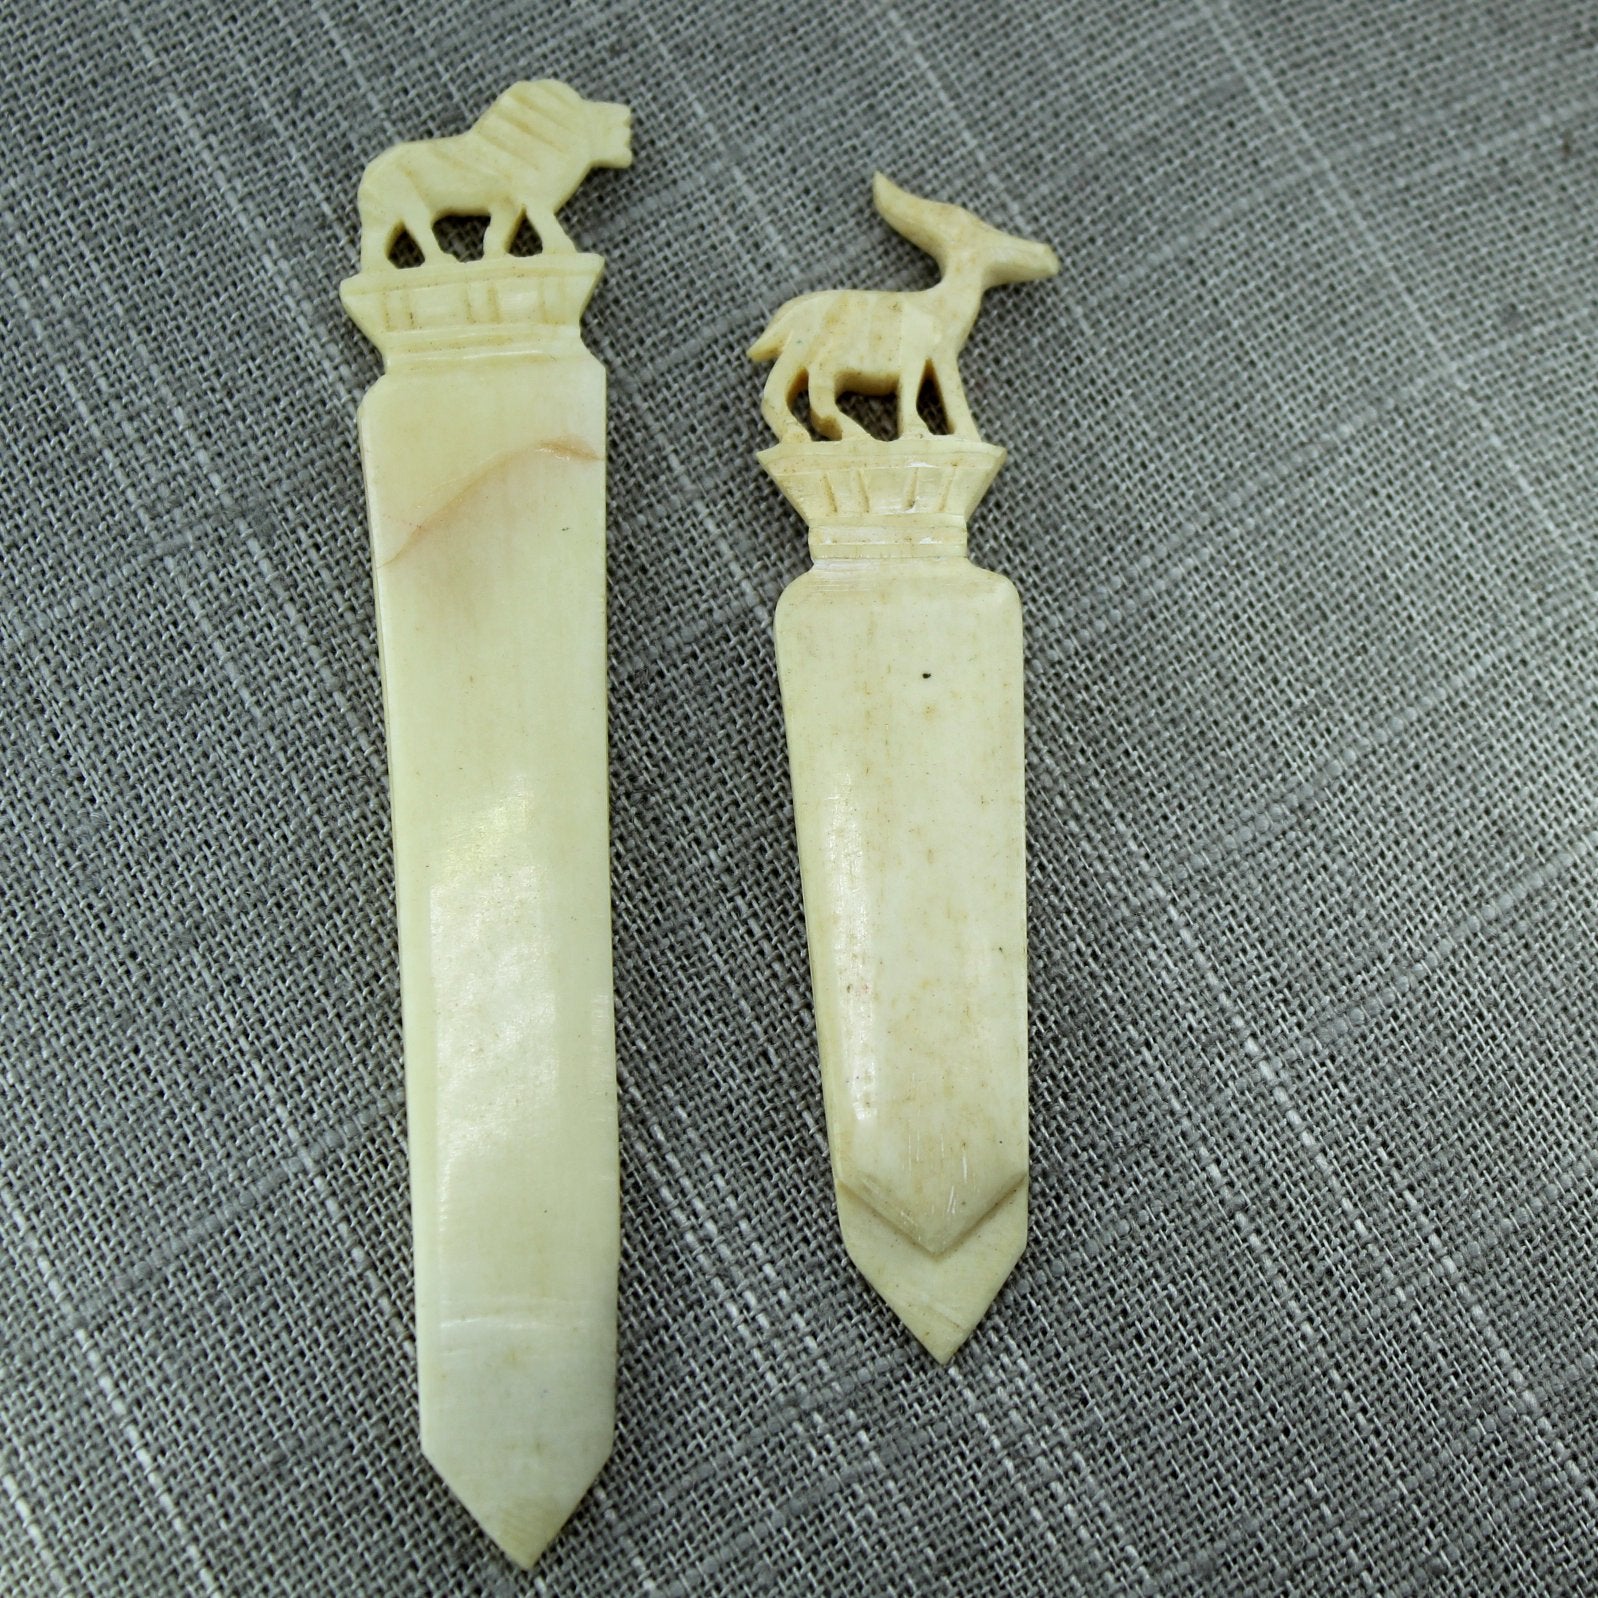 Pair Vintage Bone Bookmarks Letter Opener Lion Gazelle Carved back showing crack repair